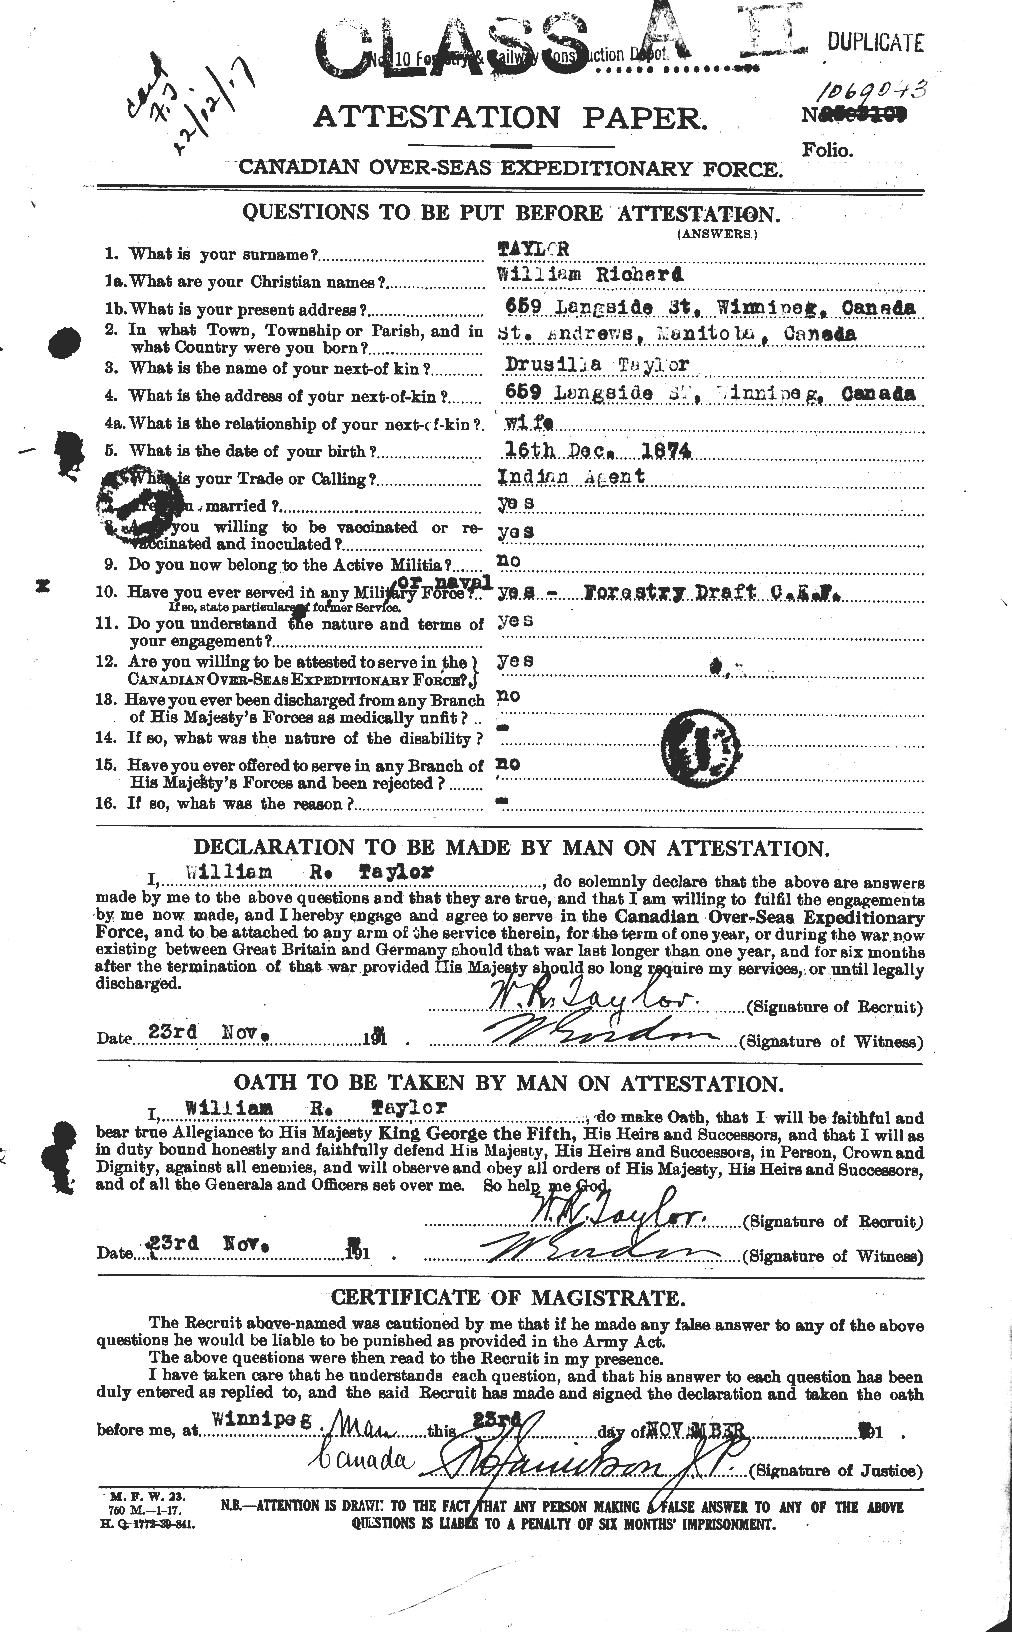 Dossiers du Personnel de la Première Guerre mondiale - CEC 628338a